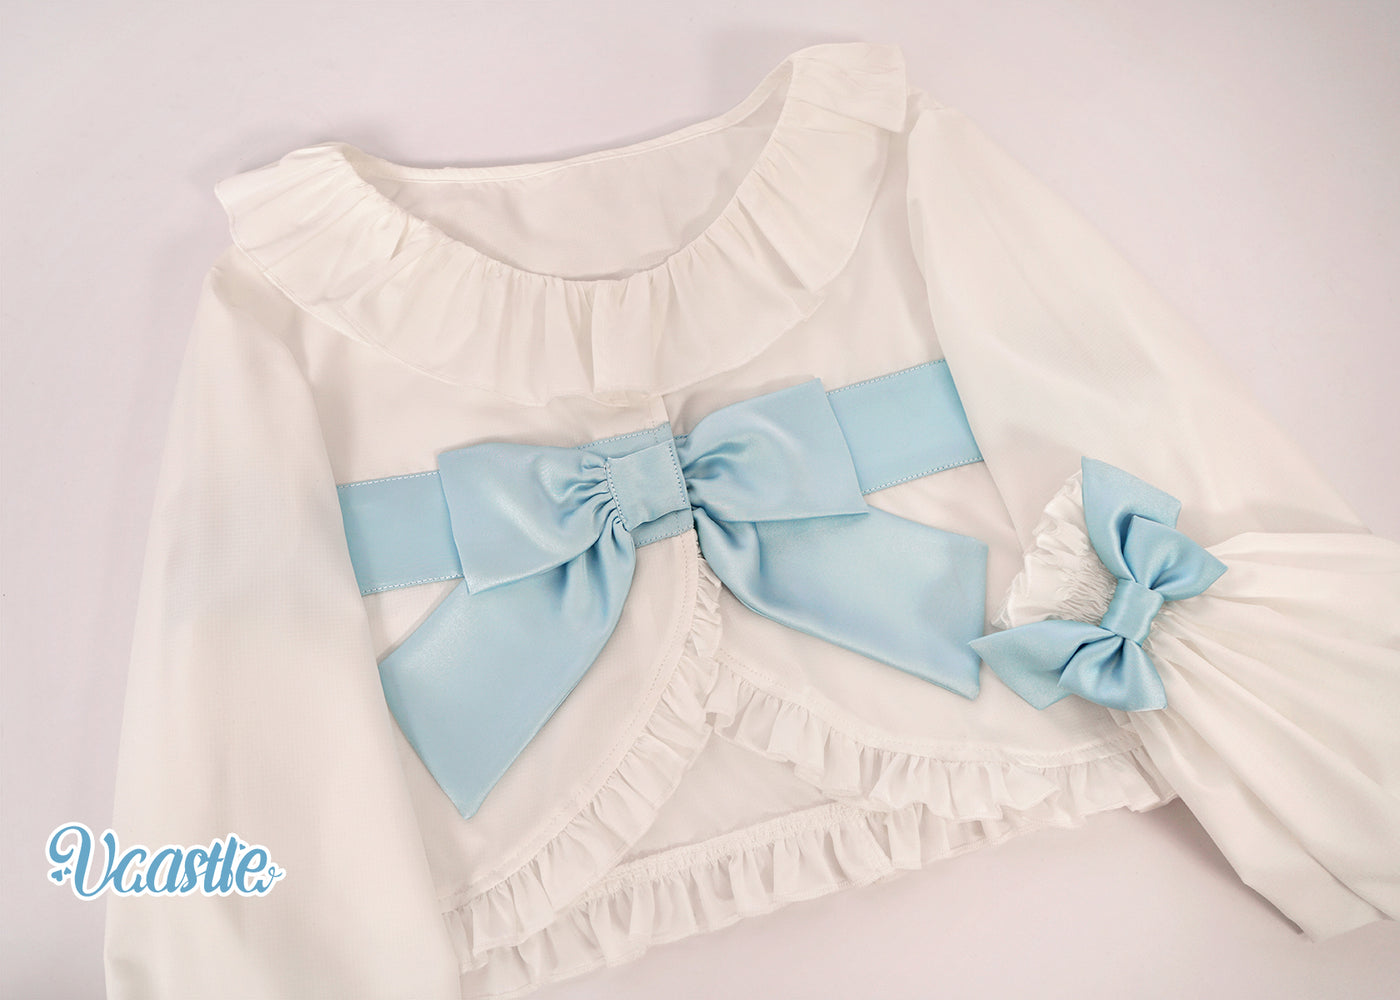 (Buy for me) Vcastle~Daylight Gift Box~Sweet Lolita Sunscreen Bolero S blue 